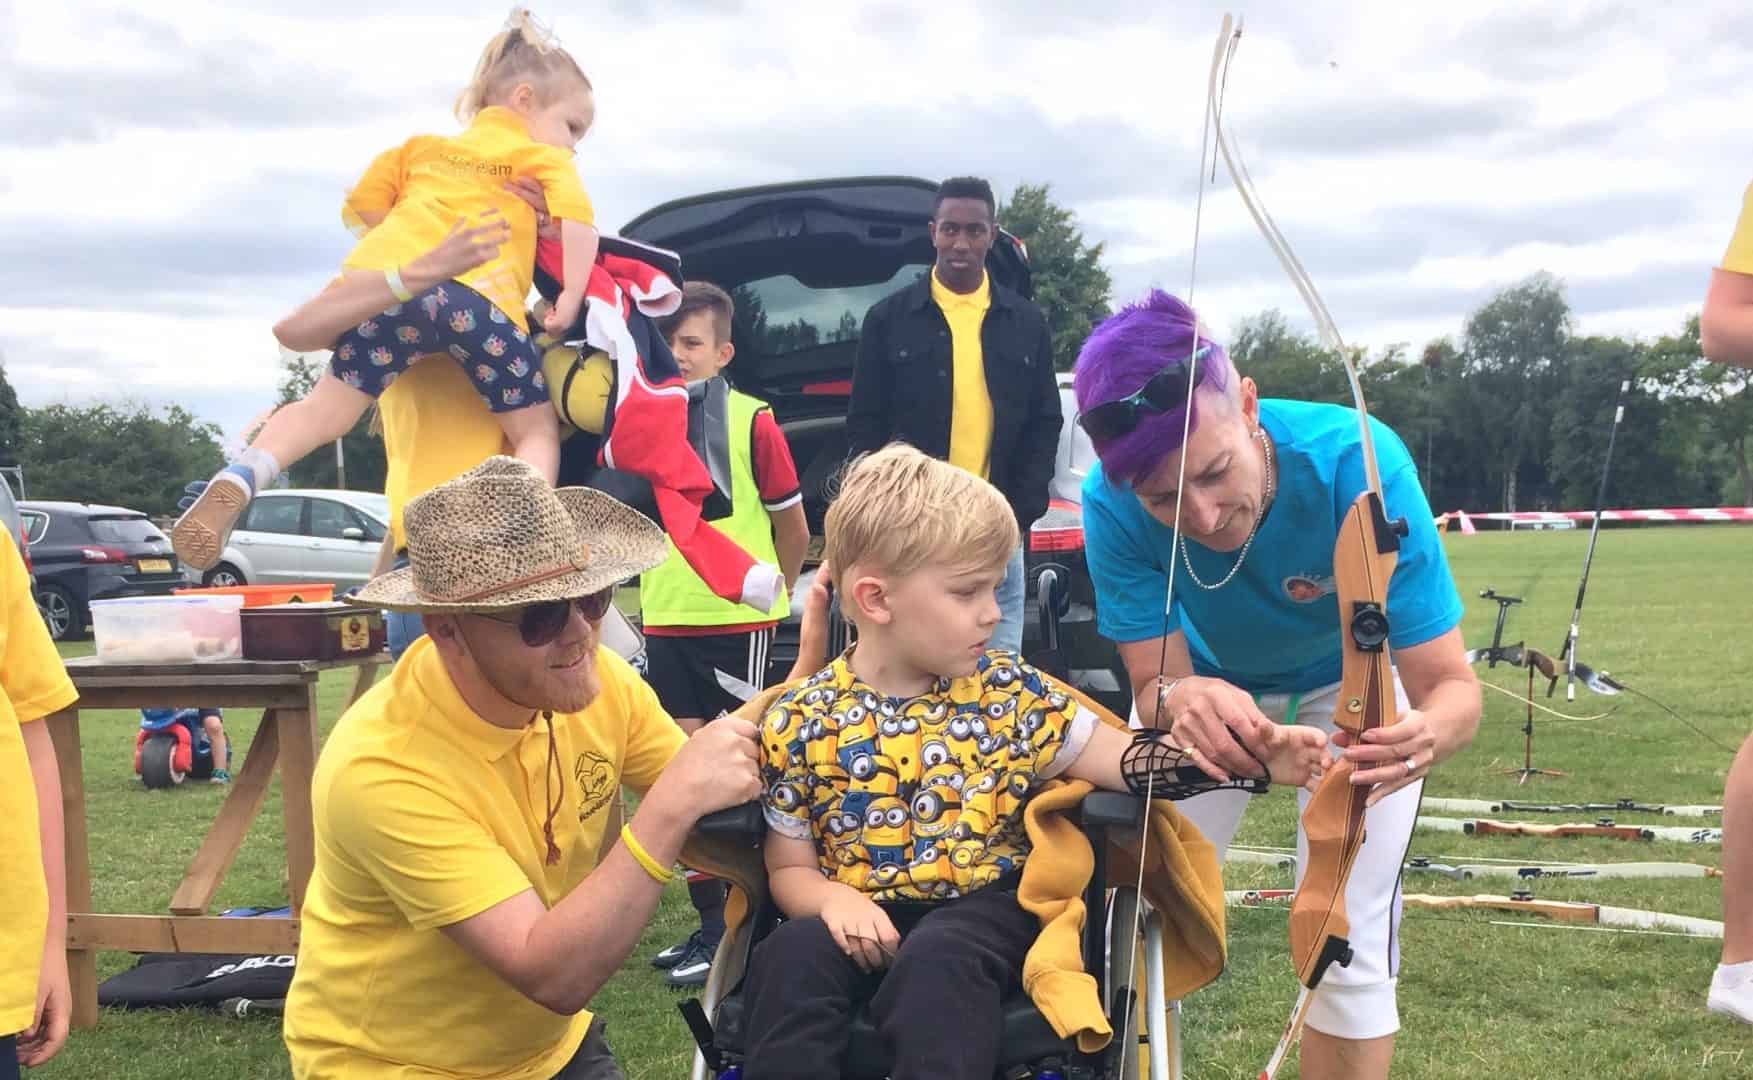 Archery GBs Big Weekend gives everyone a chance to try out the sport